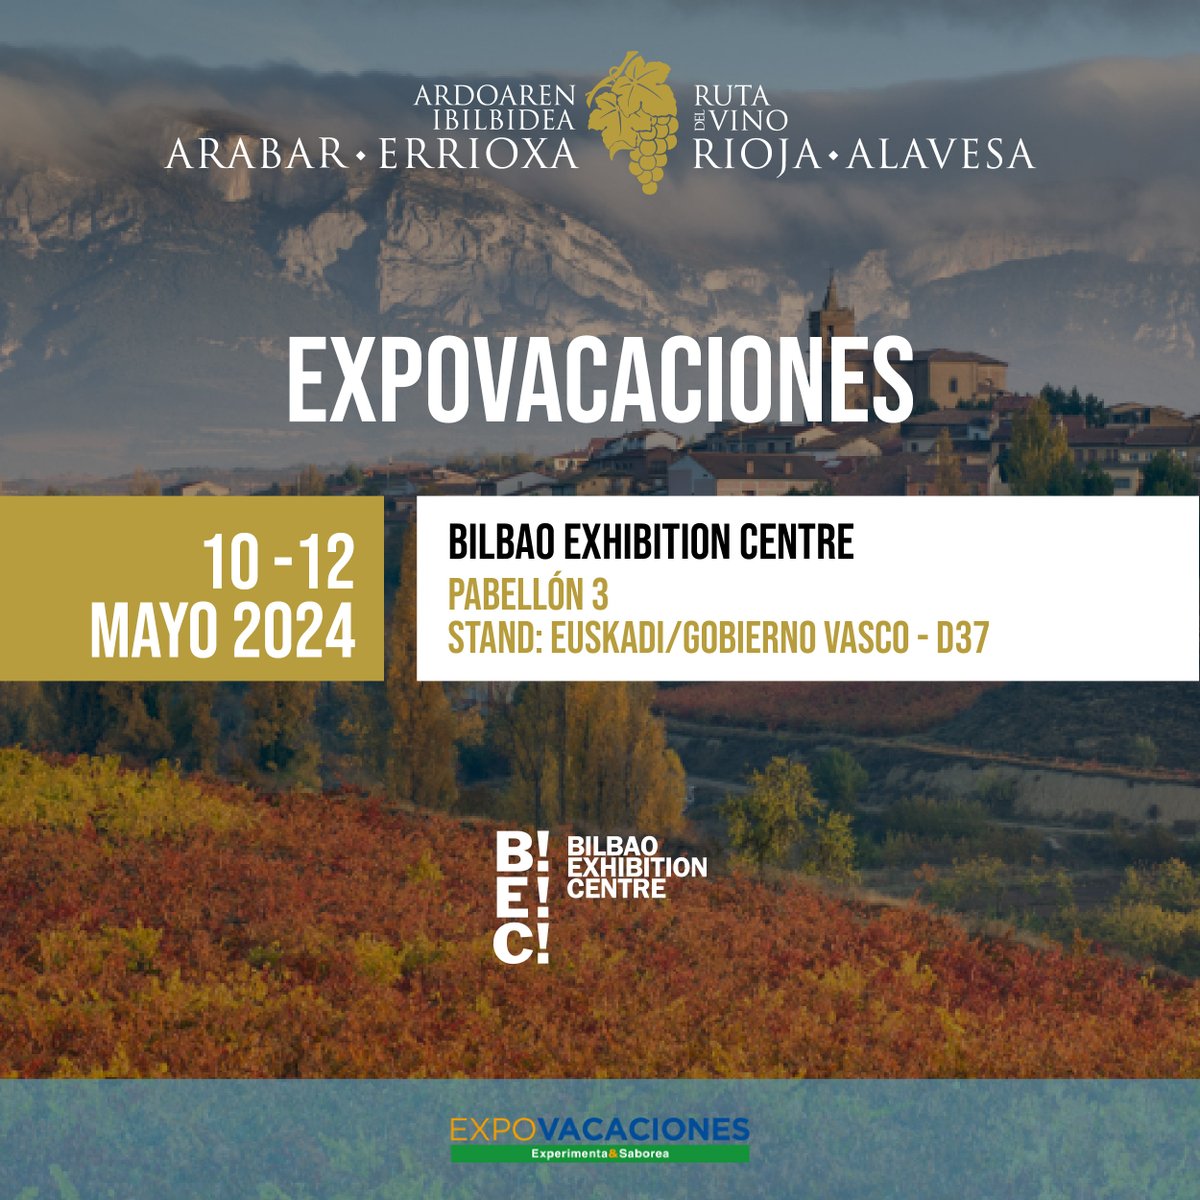 💥 Este fin de semana estaremos en @Expovacaciones promocionando la oferta turística de Ruta del Vino de Rioja Alavesa. 🗓 Del 10 al 12 de mayo 📍 Pabellón 3 - stand D37, @BEC_Bilbao Consigue tu entrada 👉🏼 zurl.co/pUIp #Expovacaciones #RiojaAlavesa